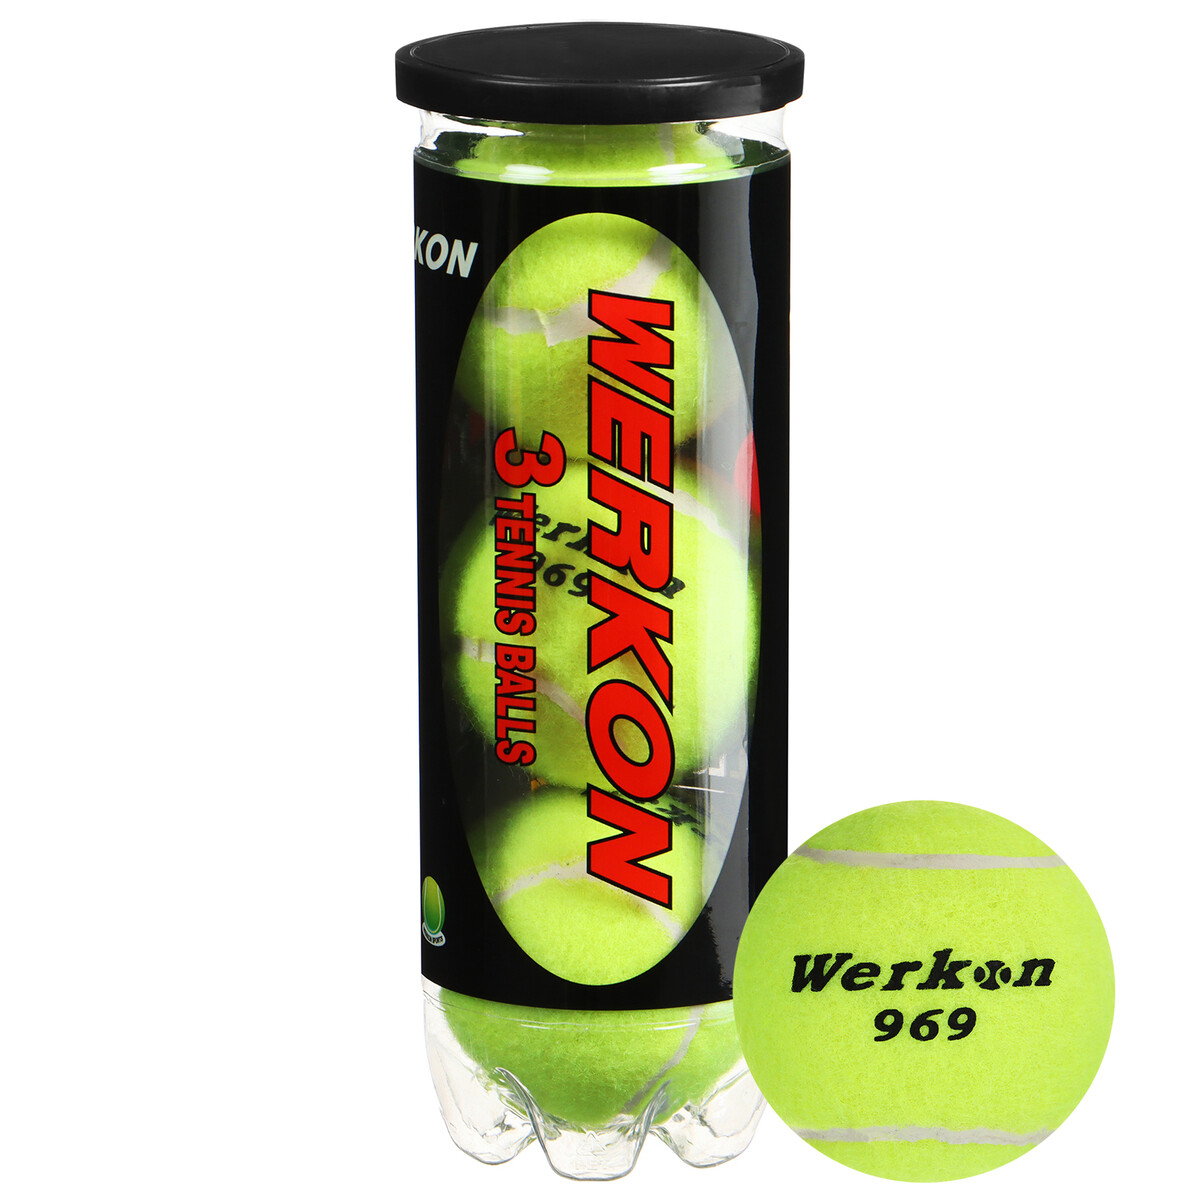 Набор мячей для большого тенниса werkon 969, с давлением, 3 шт. набор мячей для большого тенниса werkon 969 с давлением 3 шт